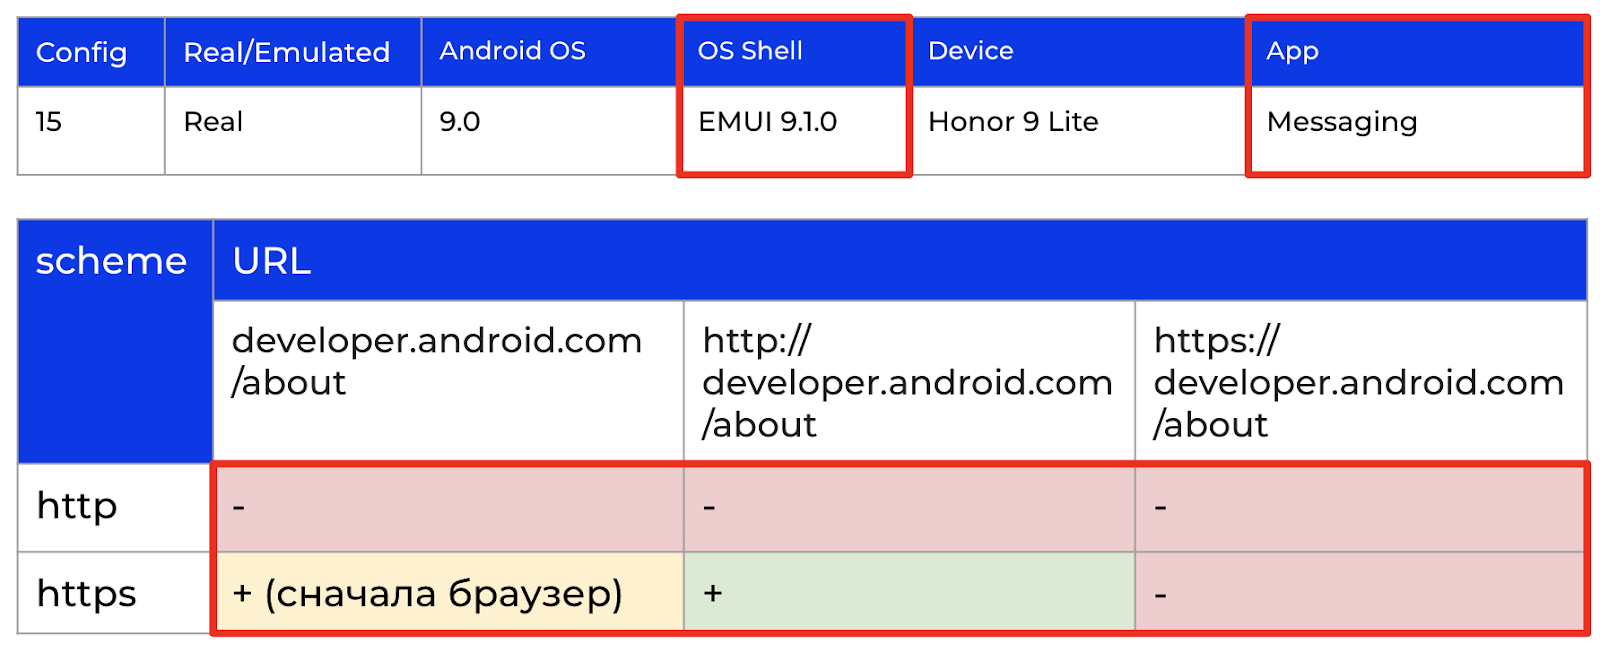 Результаты проверки гипотезы о влиянии оболочки Android ОС на встроенном СМС-клиенте на устройстве с оболочкой EMUI 9.1.0 (Config 15).
